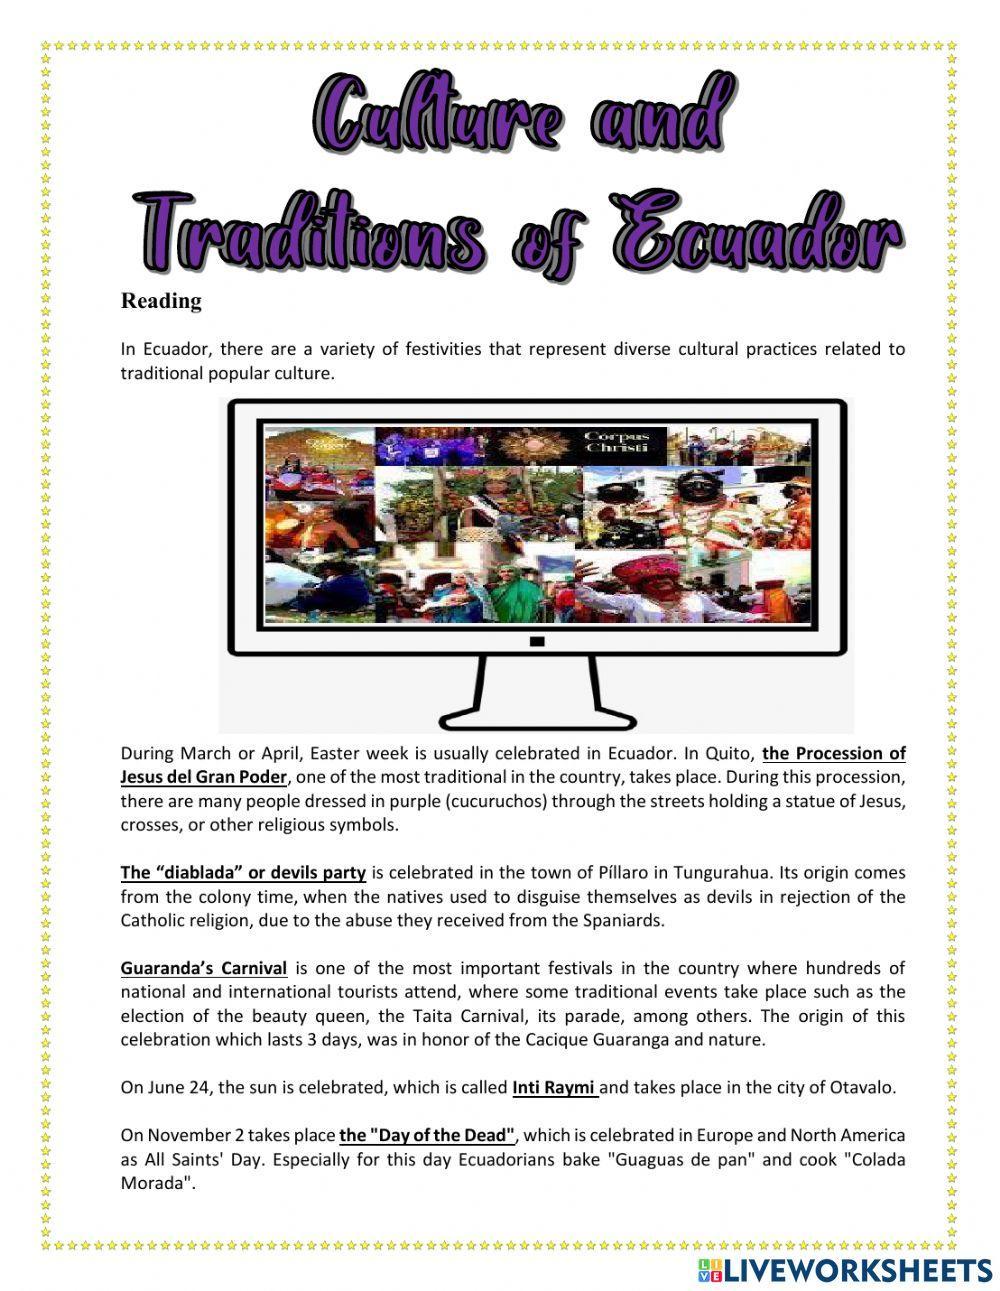 Culture and traditions of Ecuador